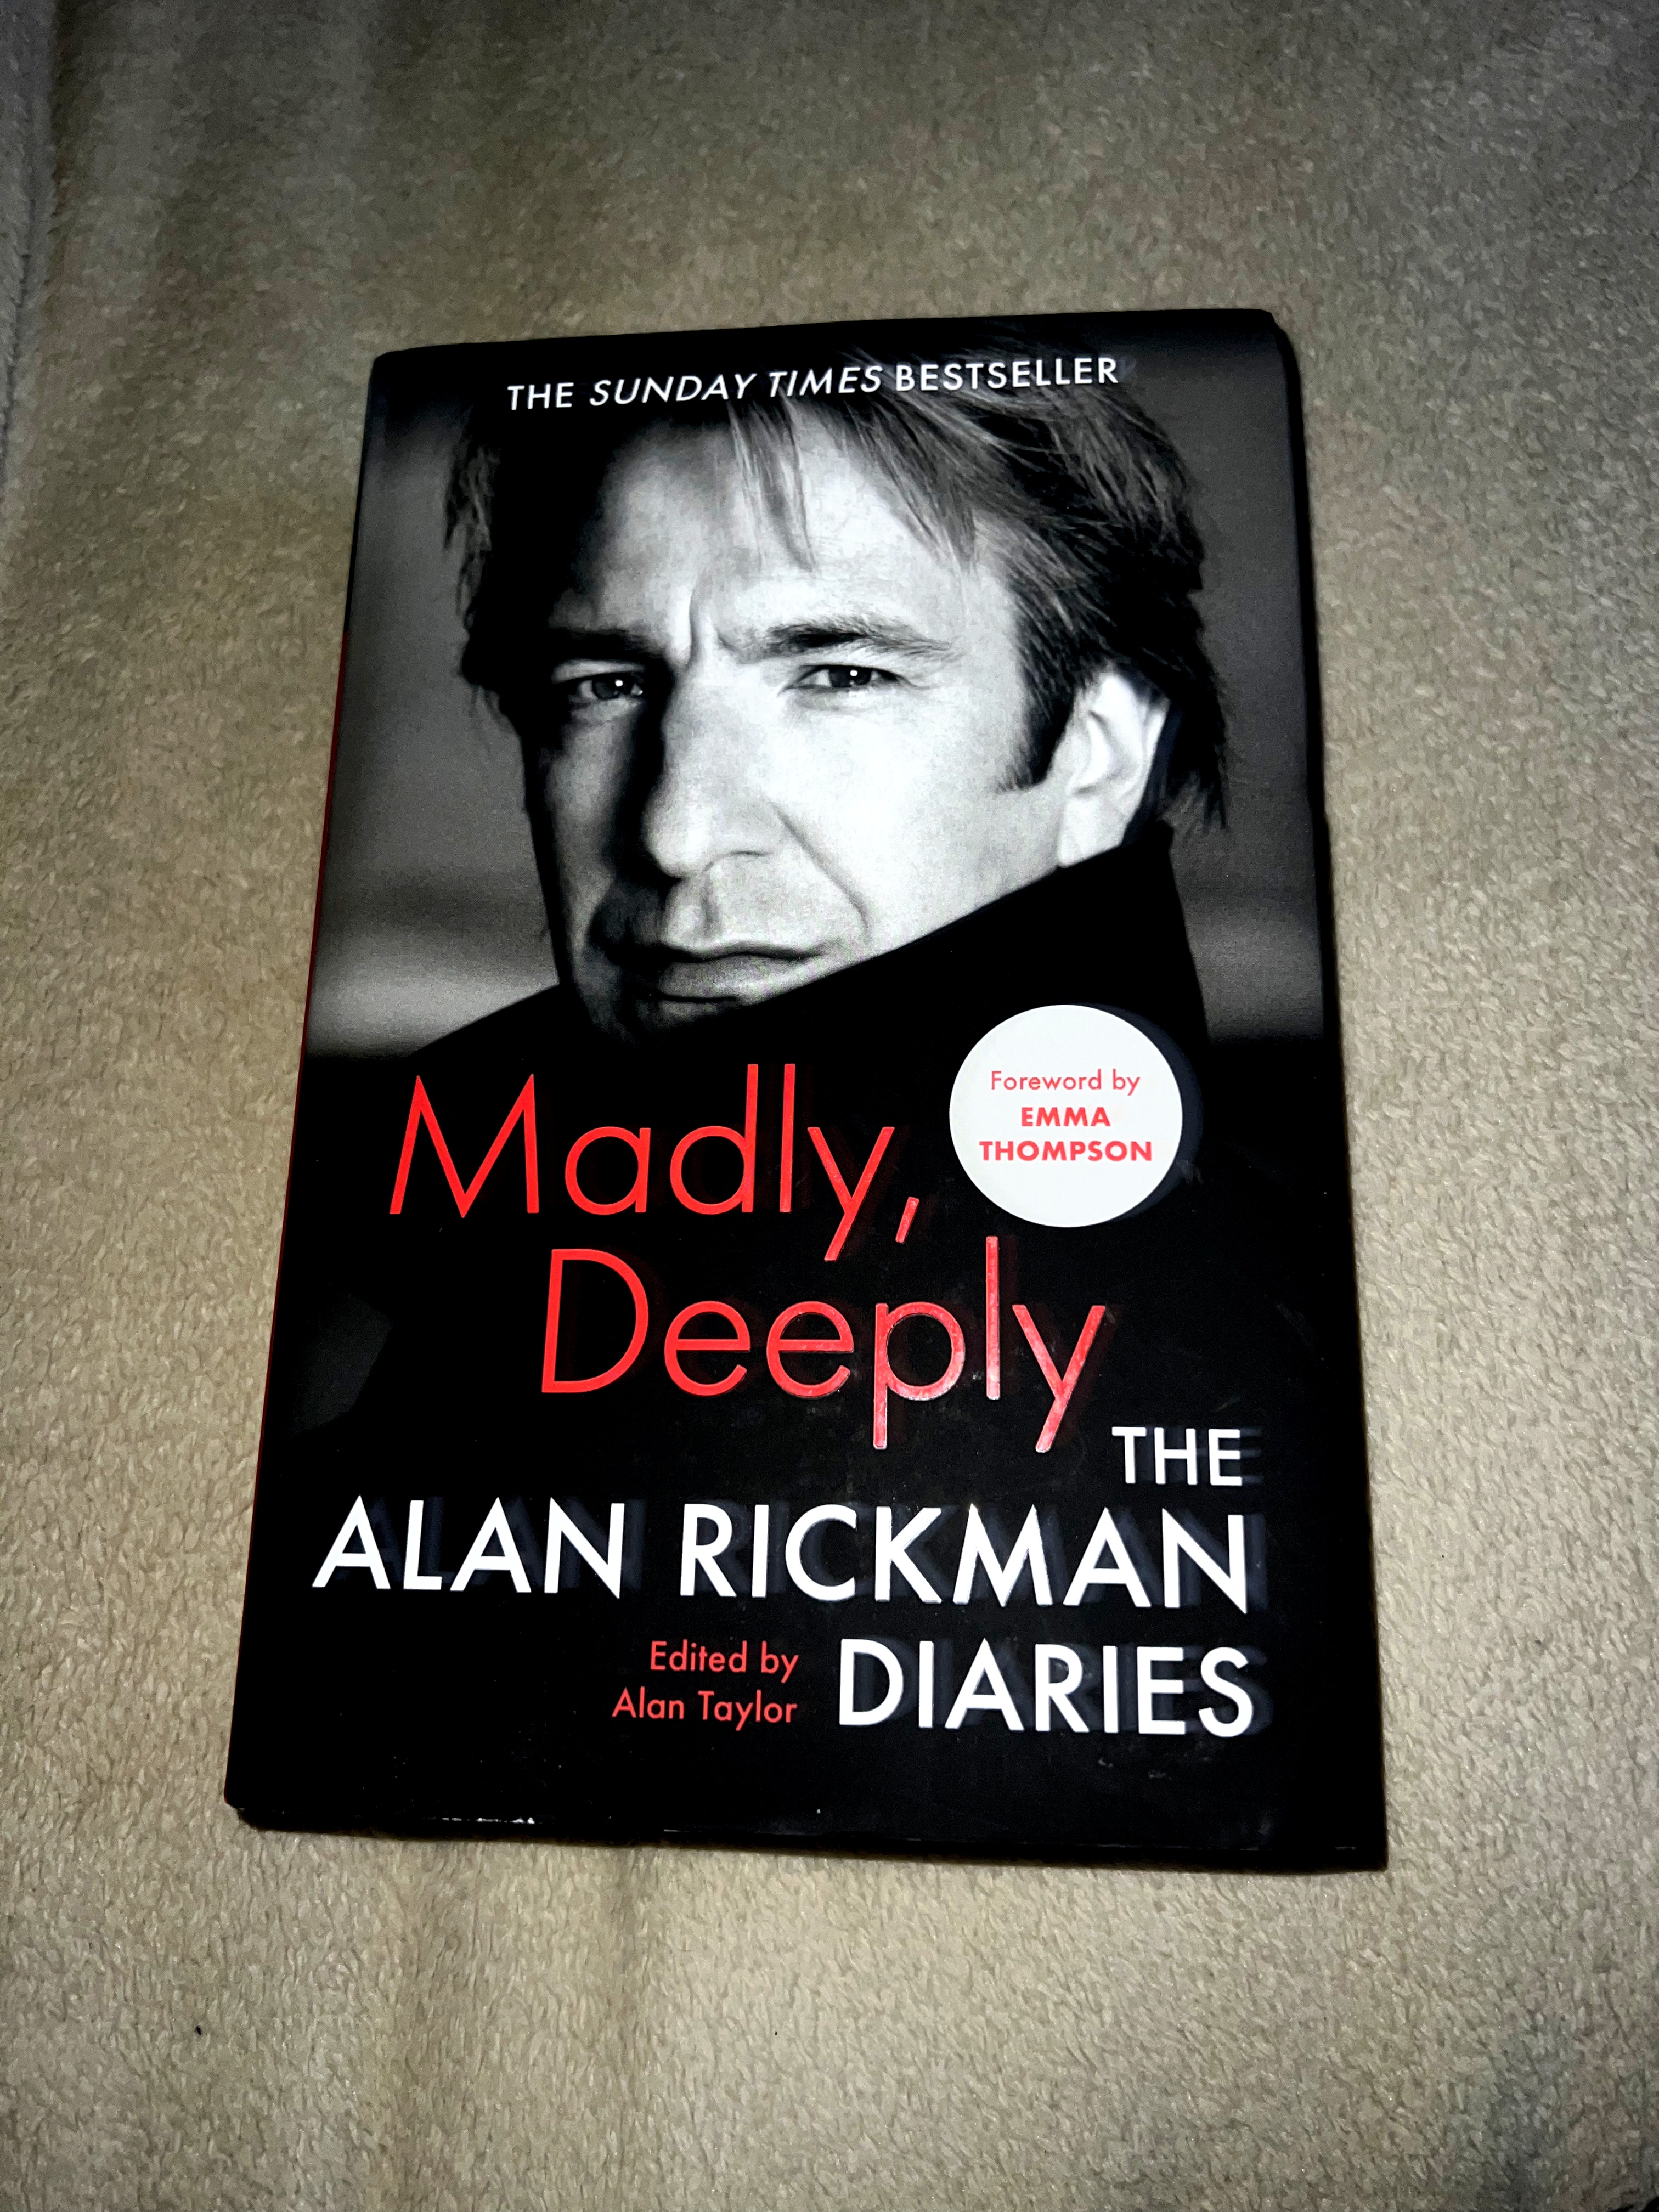 Alan Rickman - Biography